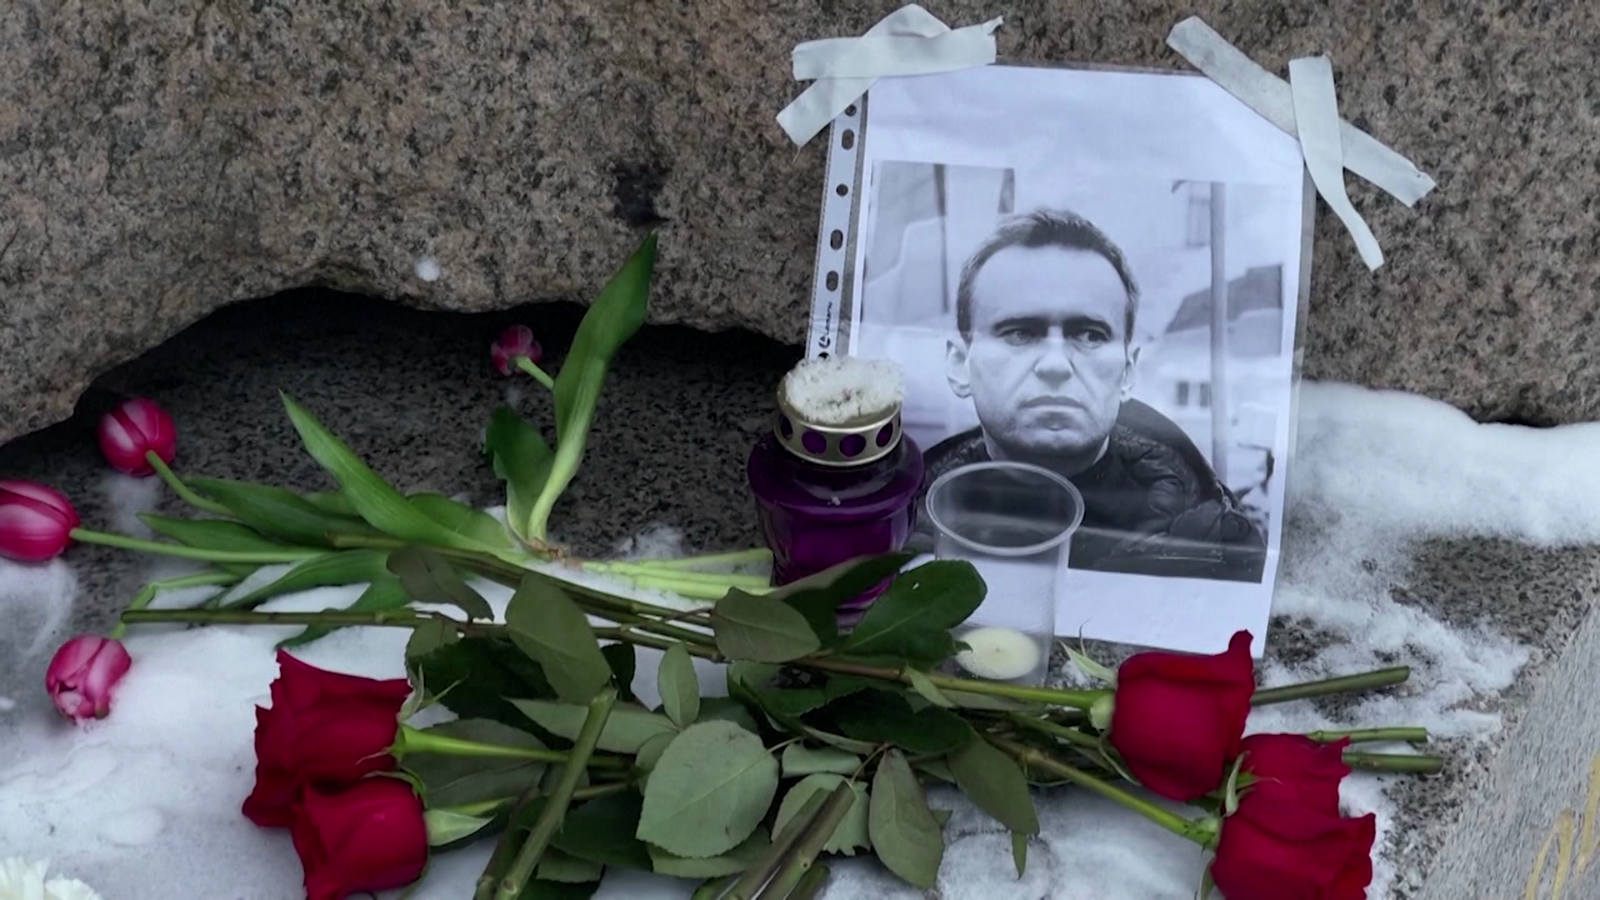 Niegan acceso a la morgue a la madre y los abogados de Alexey Navalny; el Kremlin dice no estar involucrado